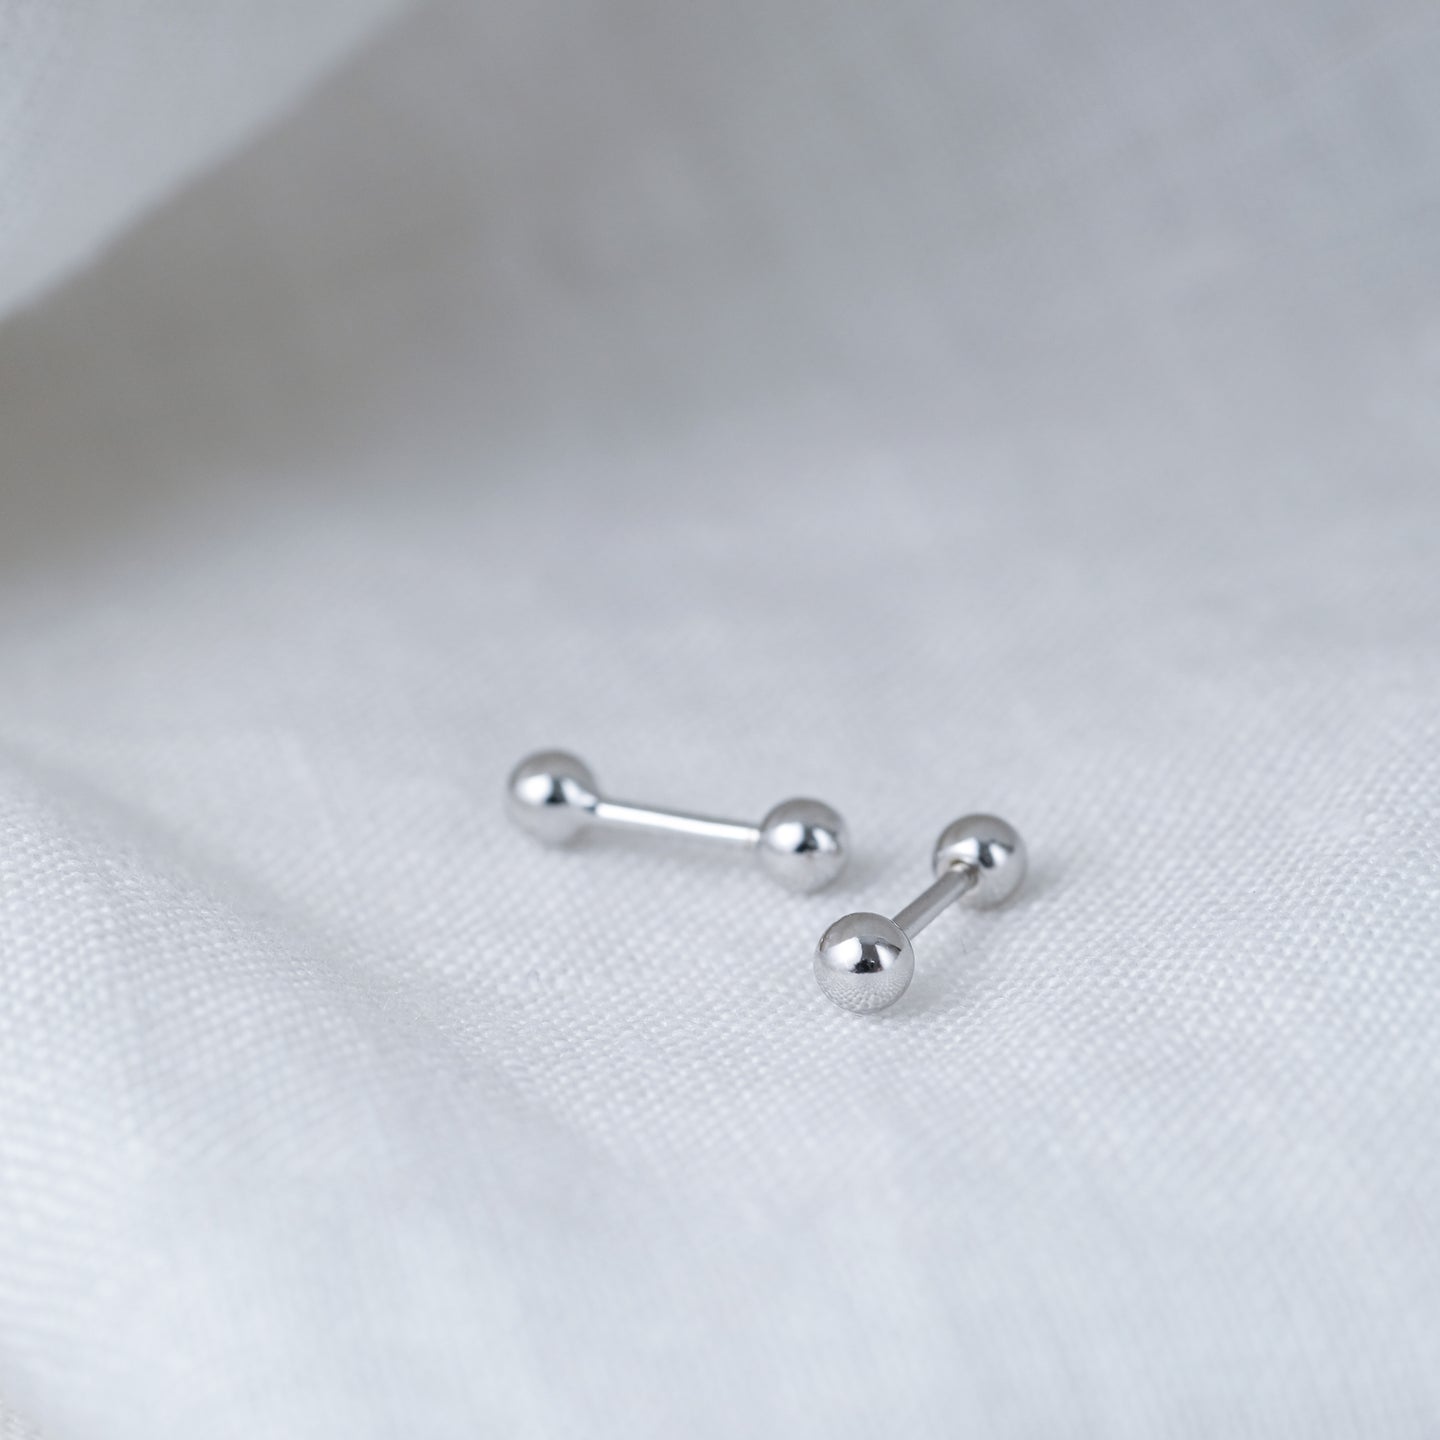 files/hola-teeny-tiny-stud-earrings-925-sterling-silver-1.jpg